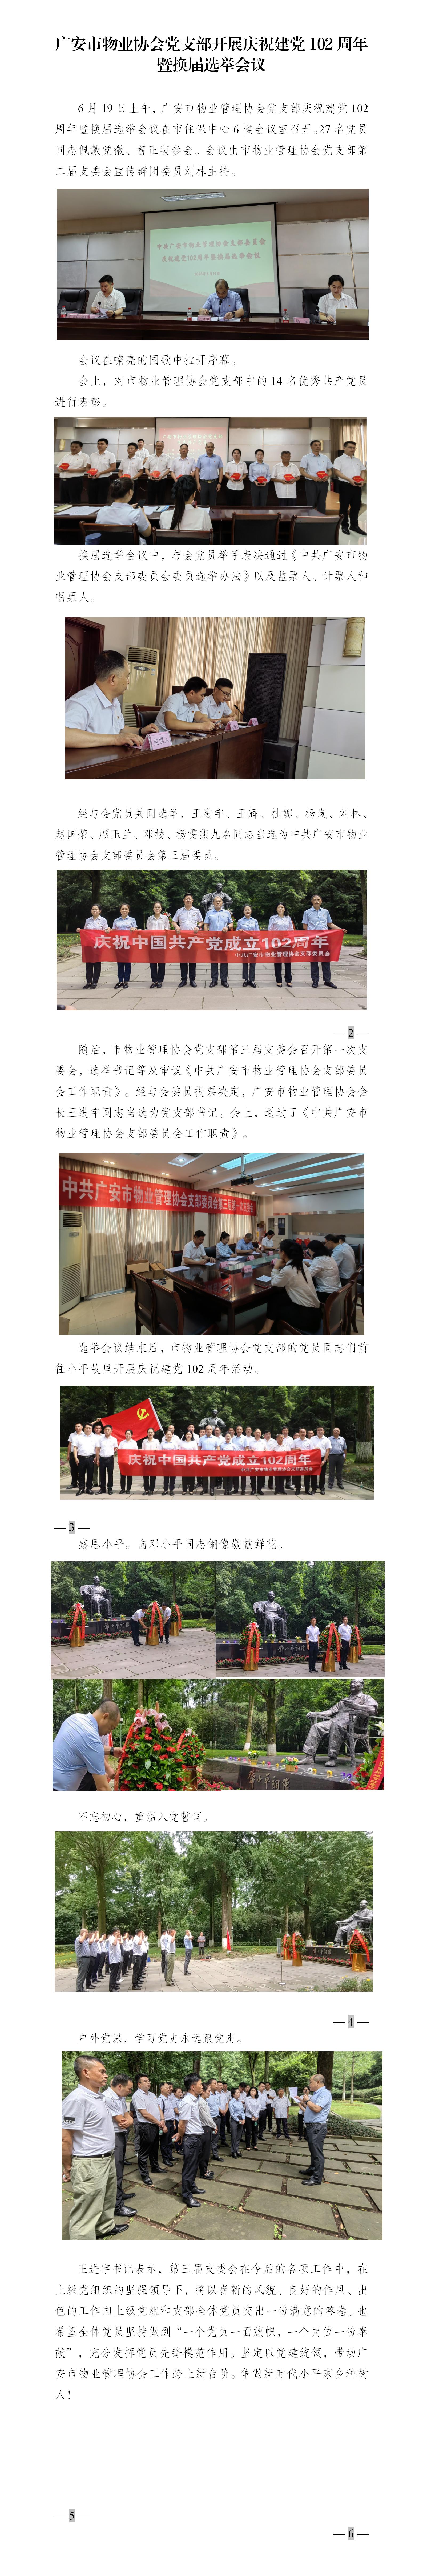 13 广安市物业协会党支部开展庆祝建党102周年暨换届选举会议_01.jpg